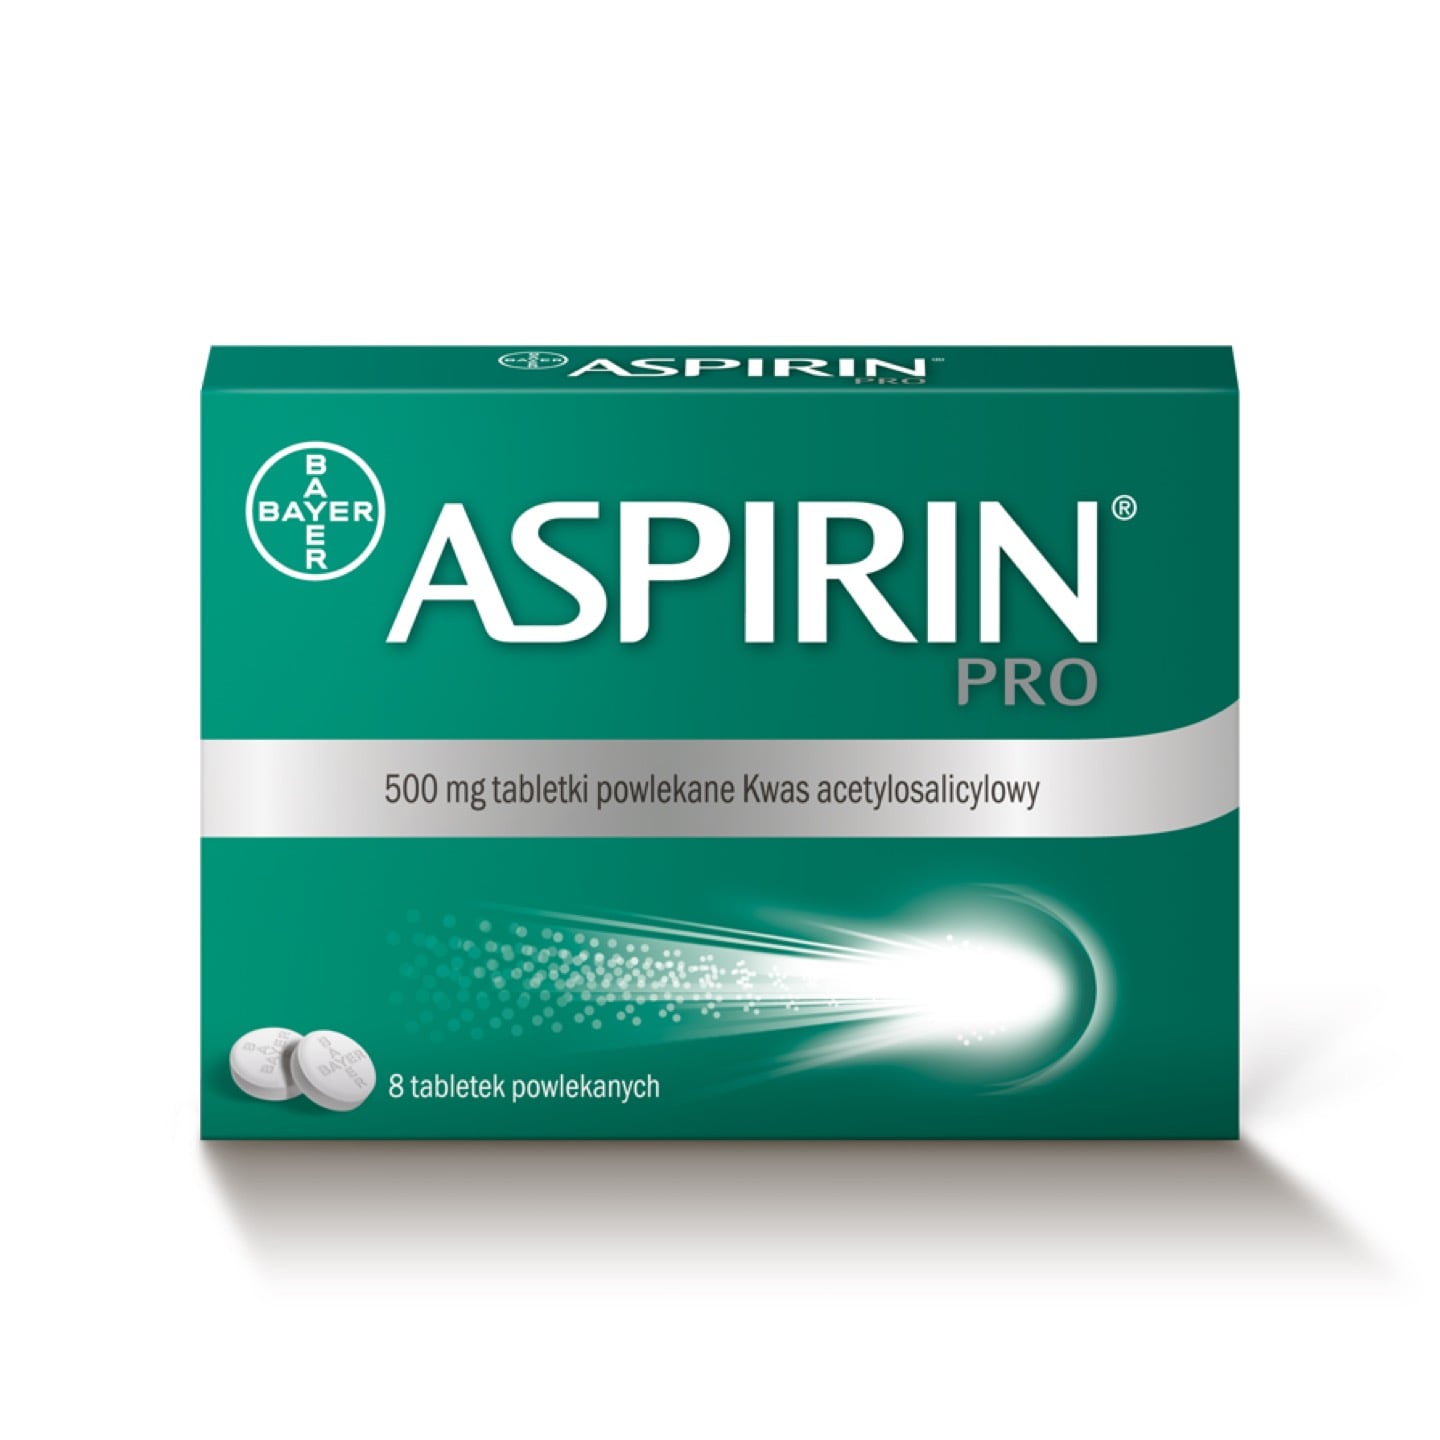 Aspirin® Pro